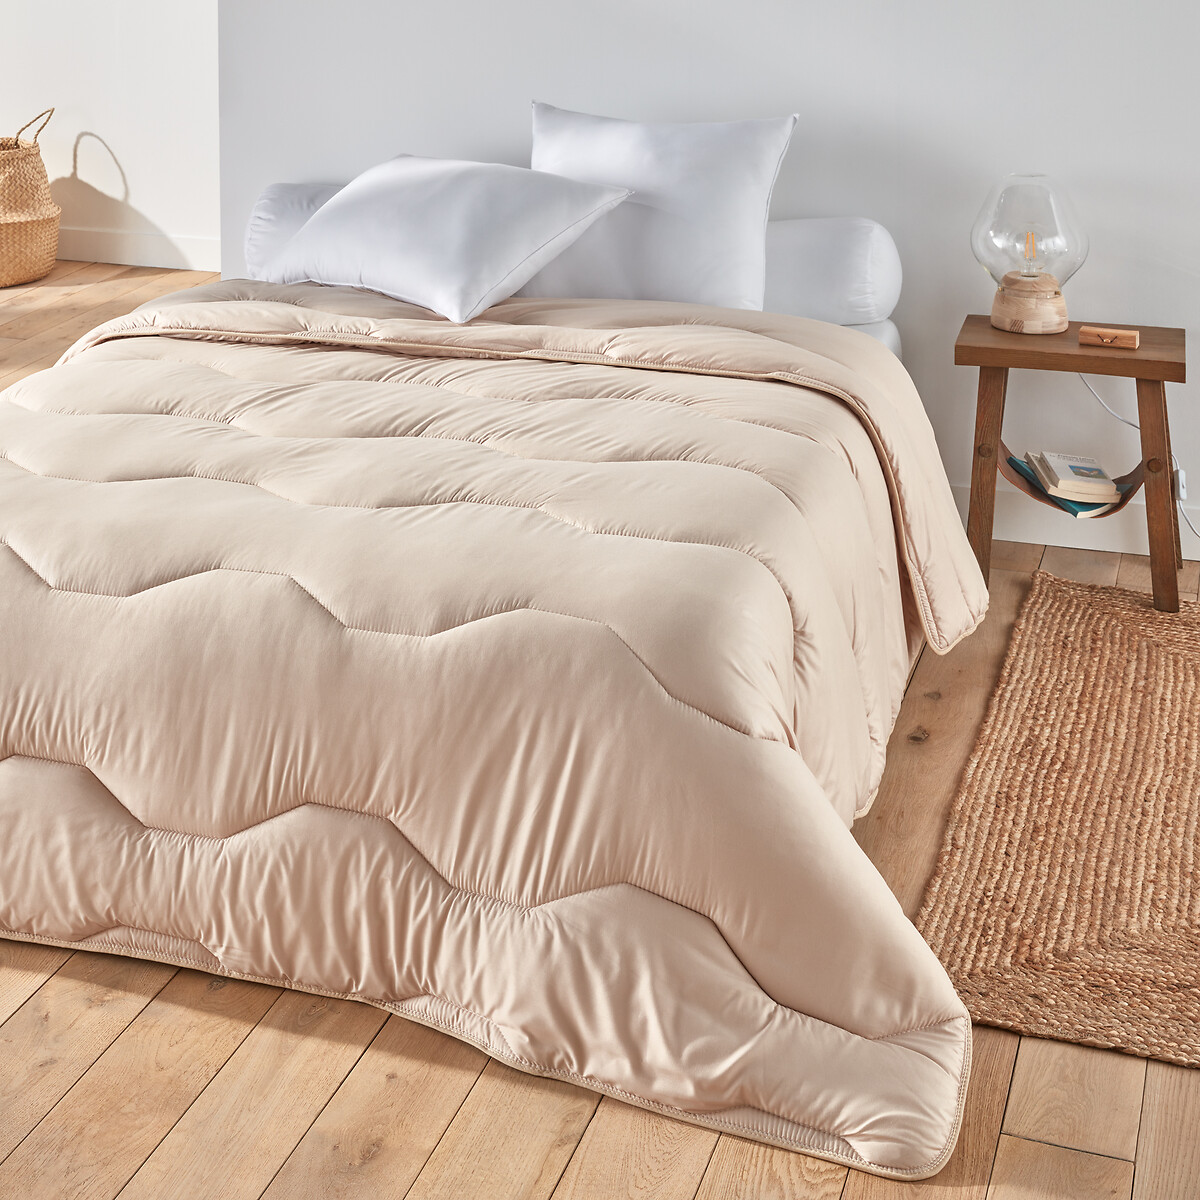 Одеяло La Redoute Из синтетики  гм 140 x 200 см бежевый, размер 140 x 200 см - фото 1